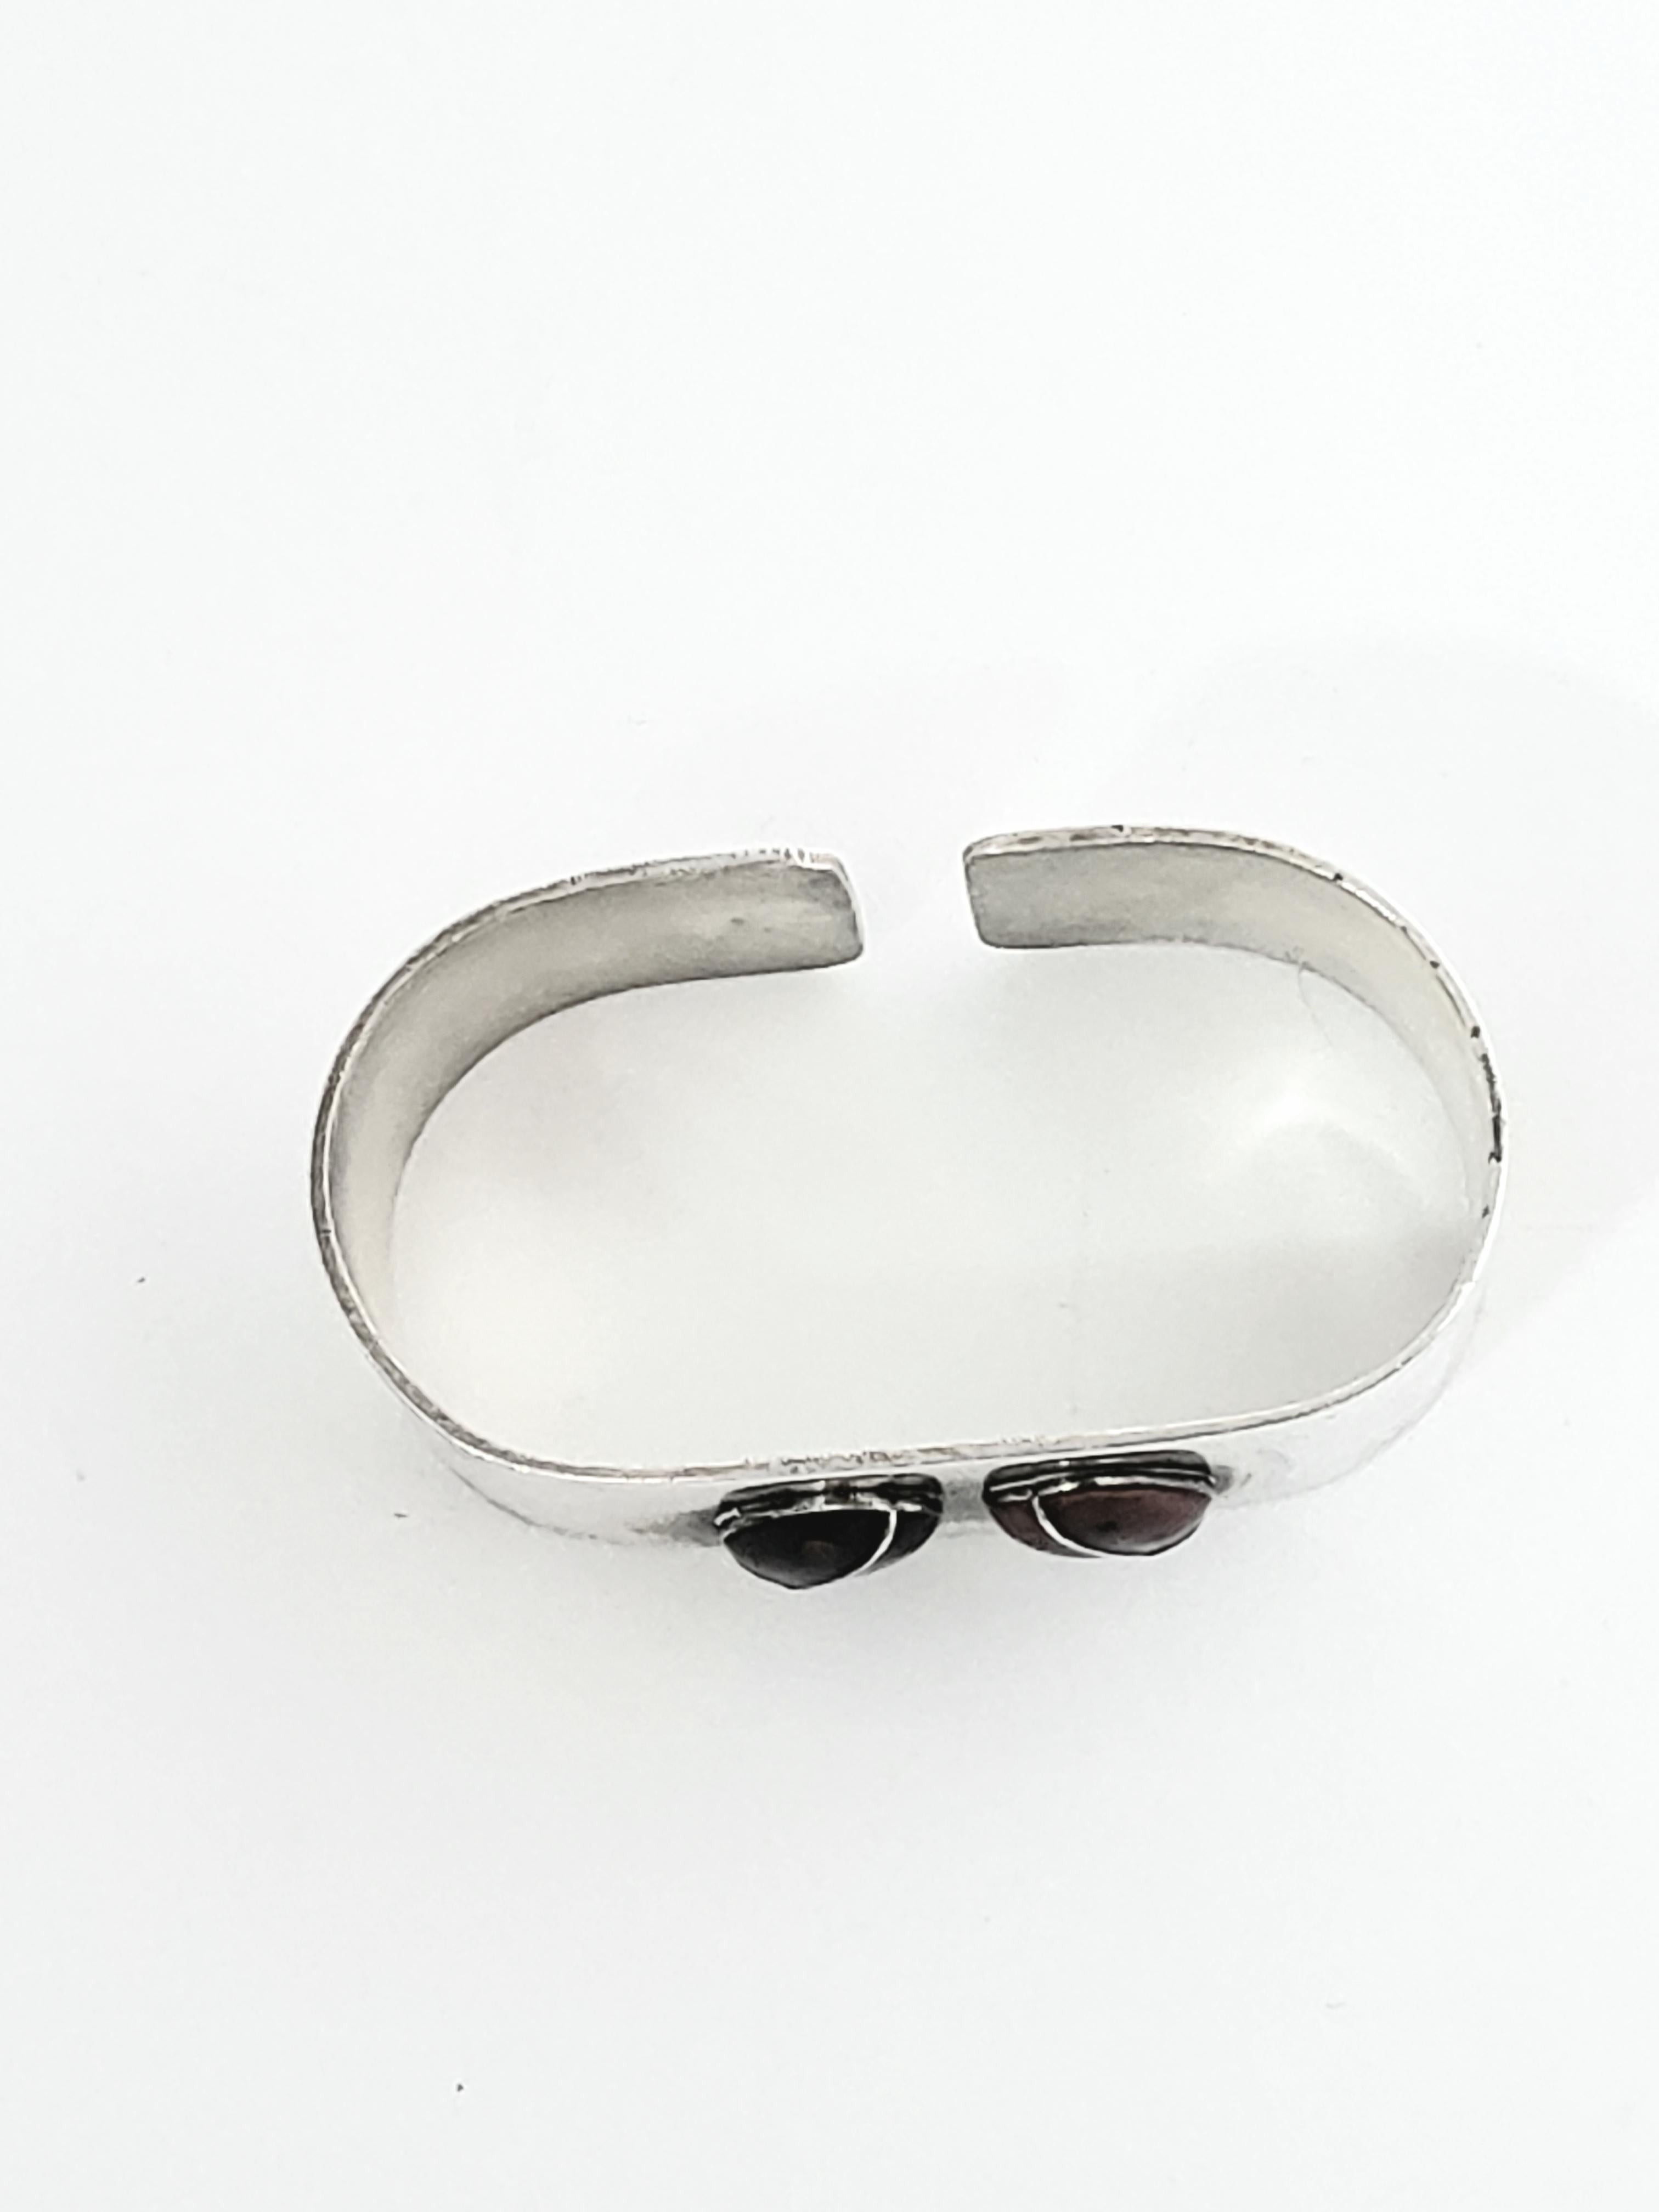 Anton Michelsen Denmark Sterling Silver Child's Ladybug Napkin Ring For Sale 4